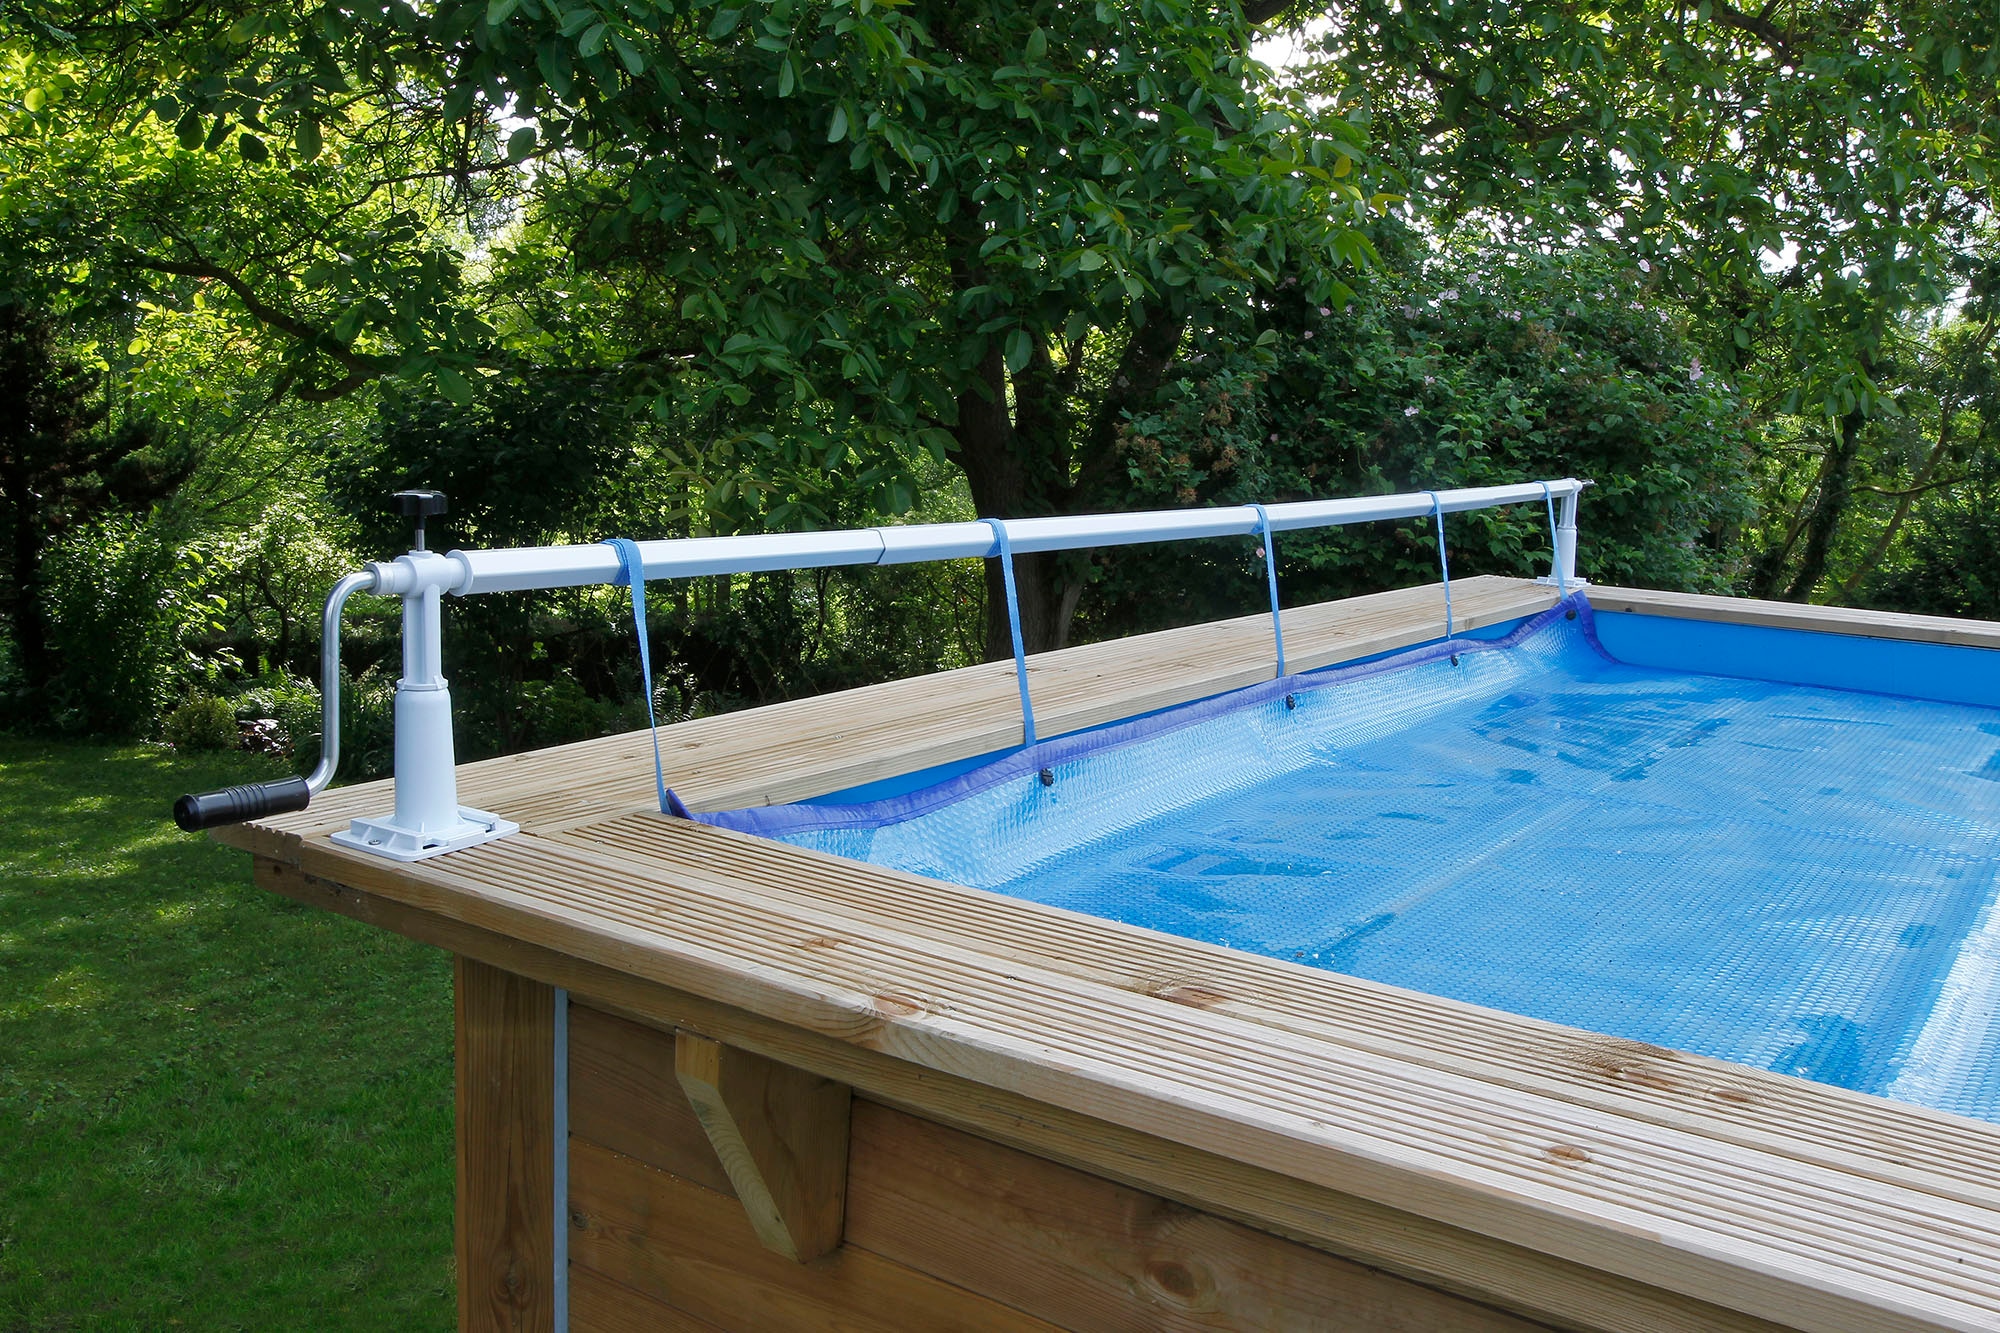 Ubbink Planenaufroller »Aufrollvorrichtung XTRA«, für Pools mit Rändern aus Holz, Rohren, Metall oder Beton